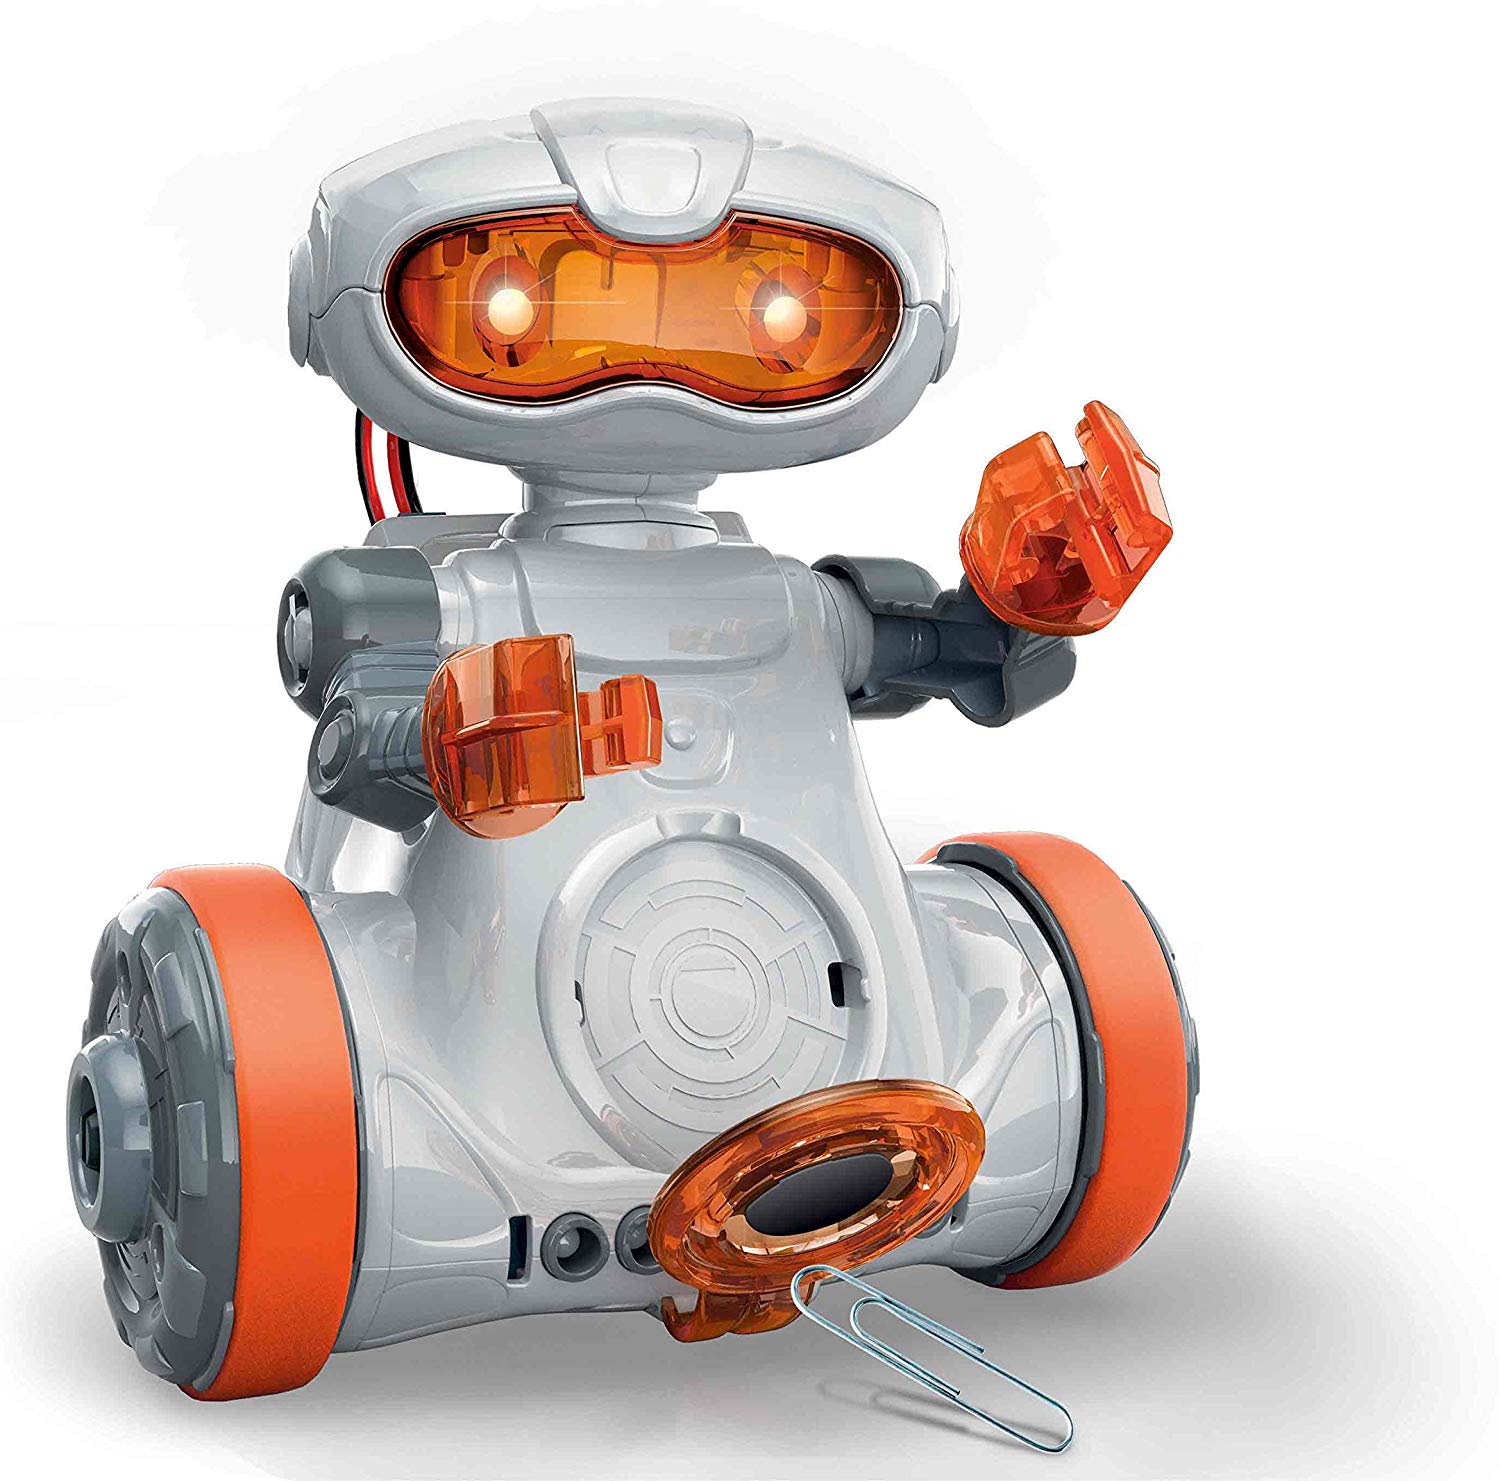 Robot Giocattolo per Bambini: Scopri i Modelli Parlanti e